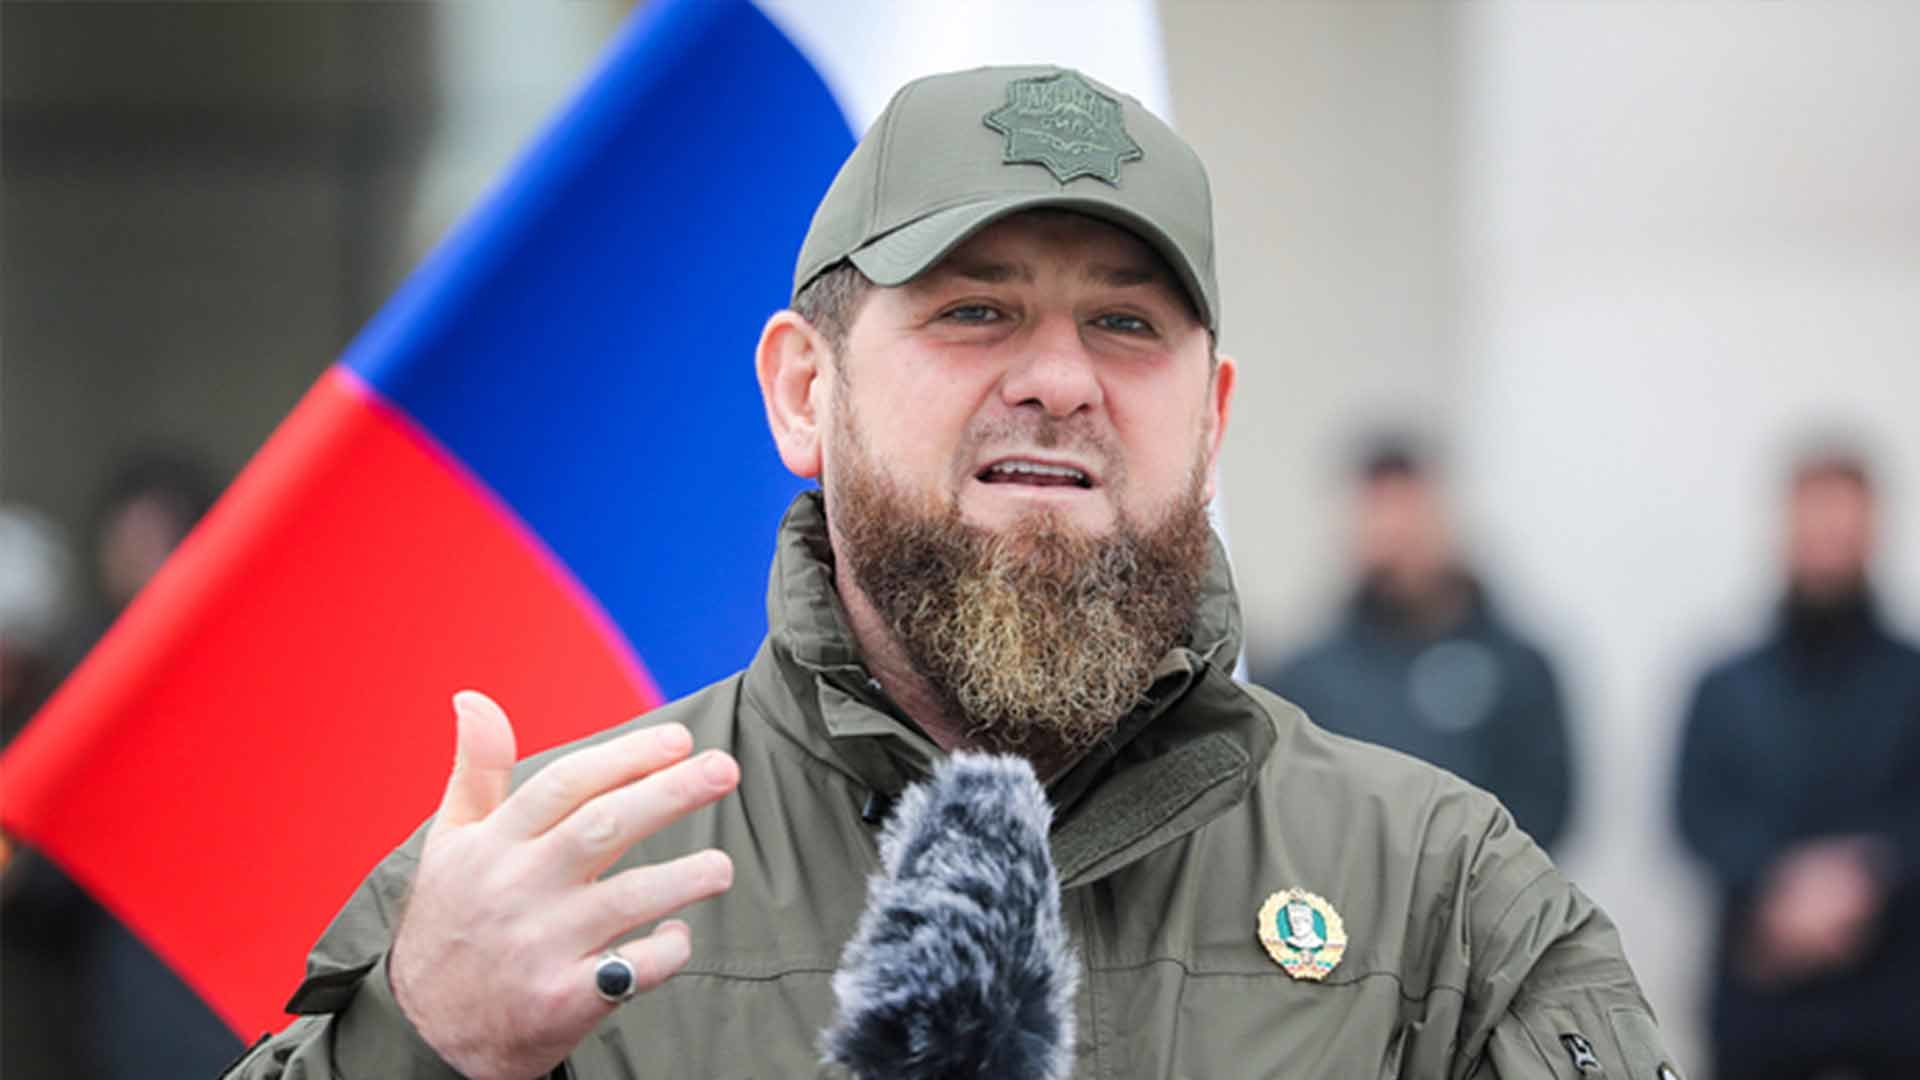 优享资讯 | 车臣领袖卡德罗夫称将送年幼儿子到俄乌前线作战